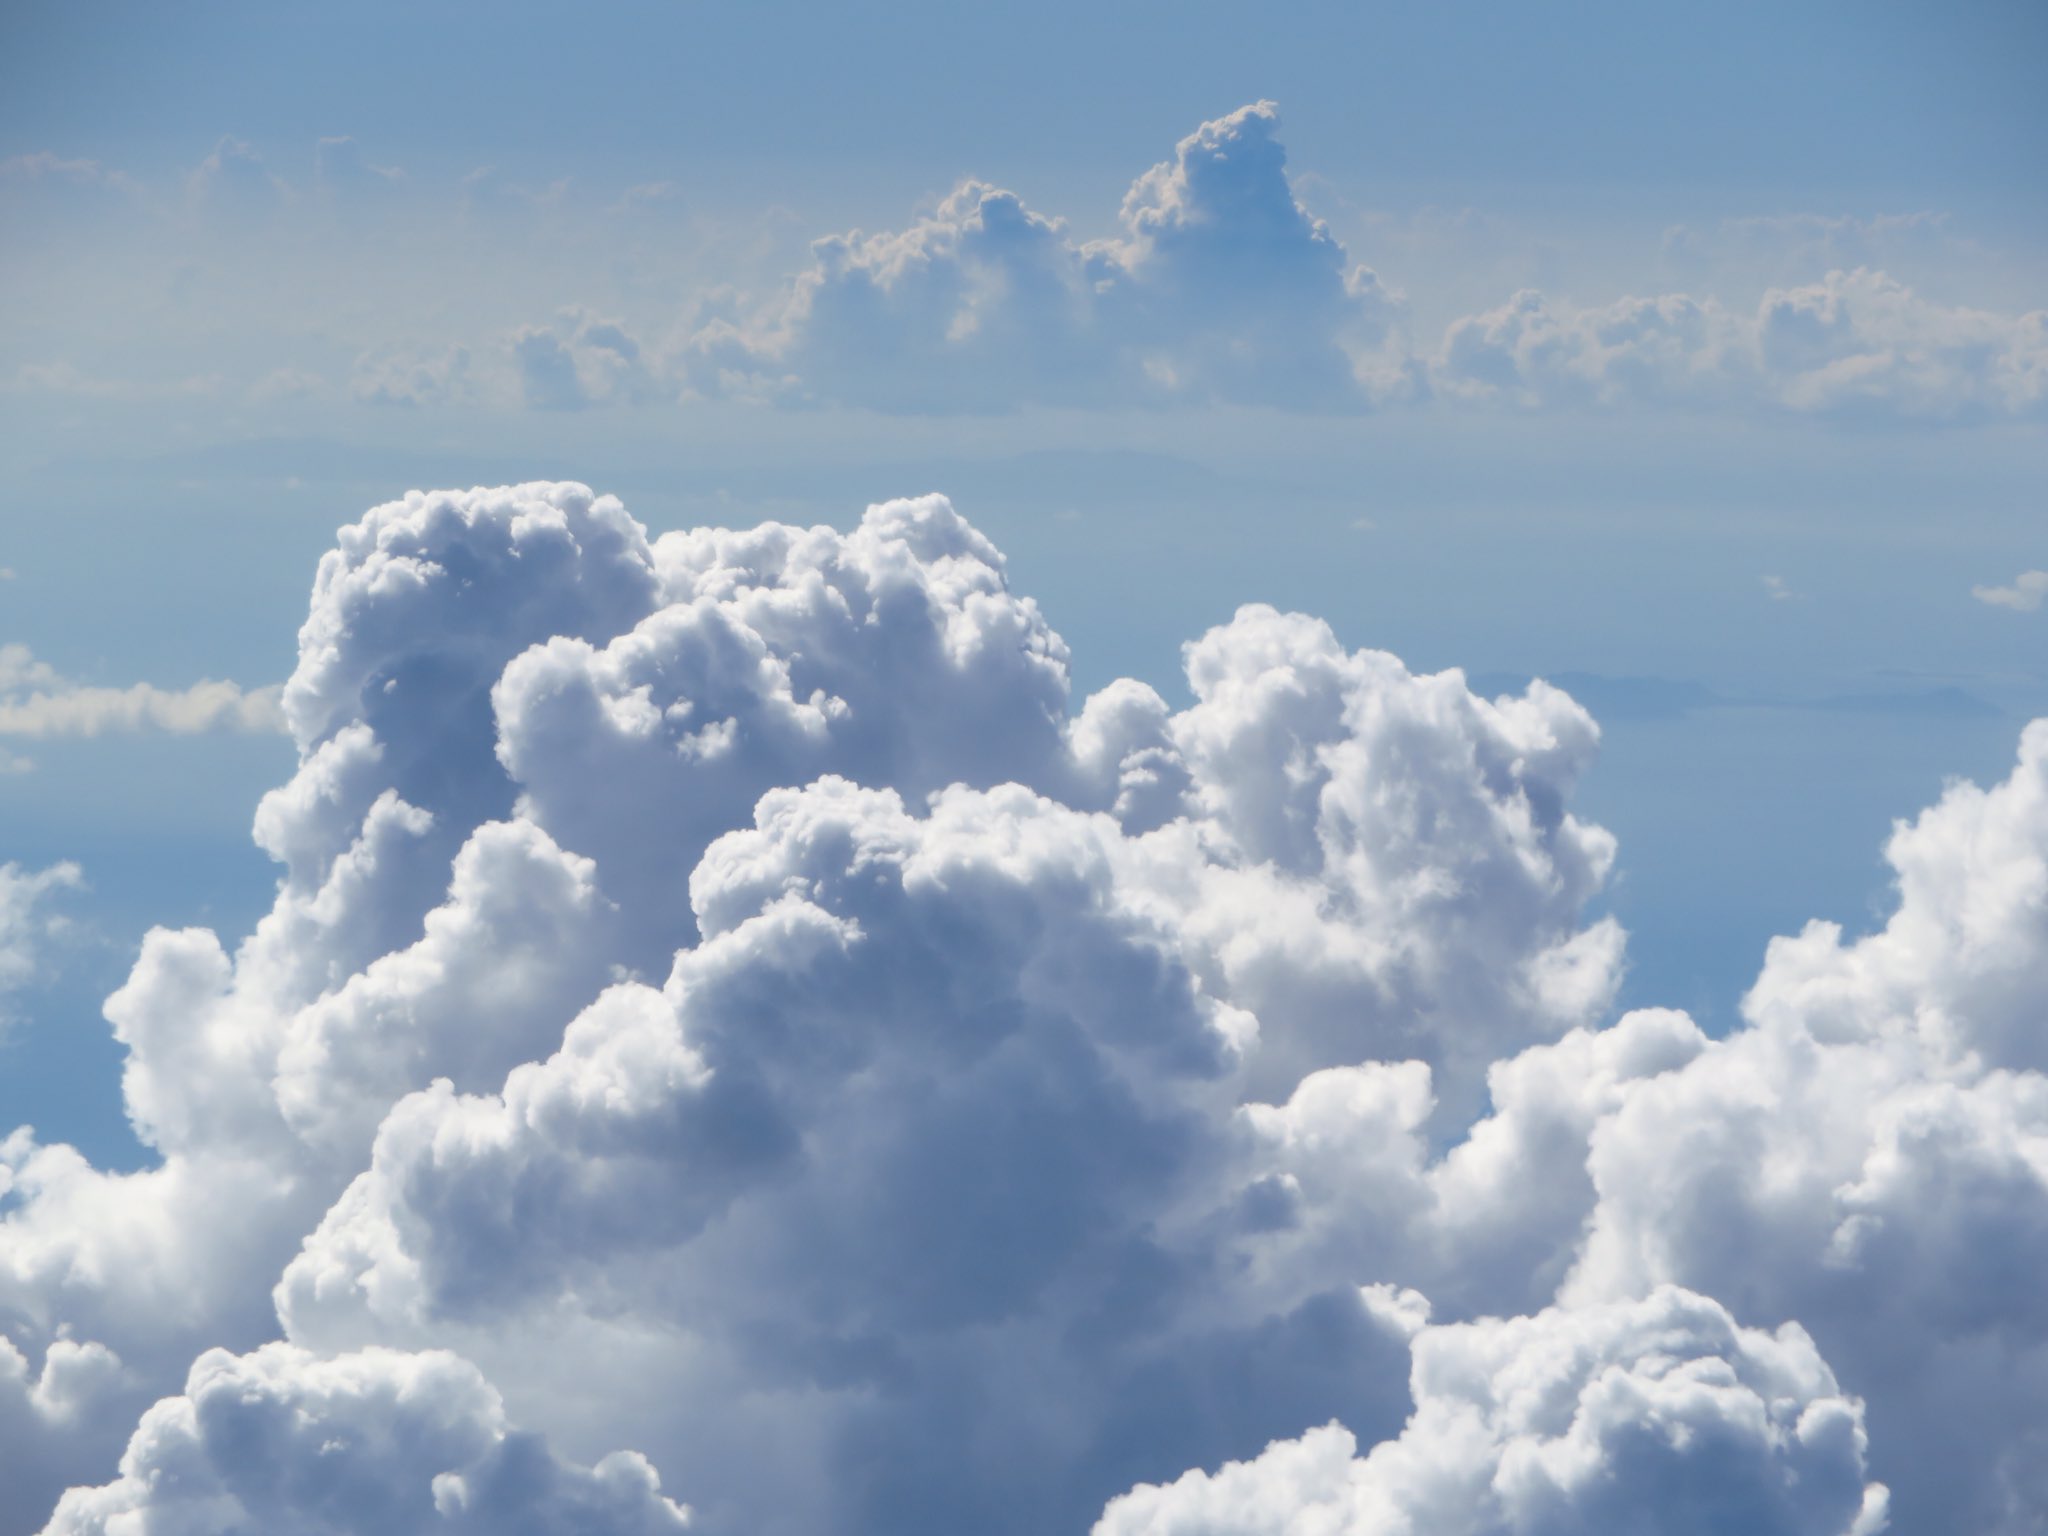 荒木健太郎 異世界感の溢れる雲の上の空 雲の織りなす景色がやたら壮大で 吸い込まれそうになる T Co Xsiftuae8y Twitter